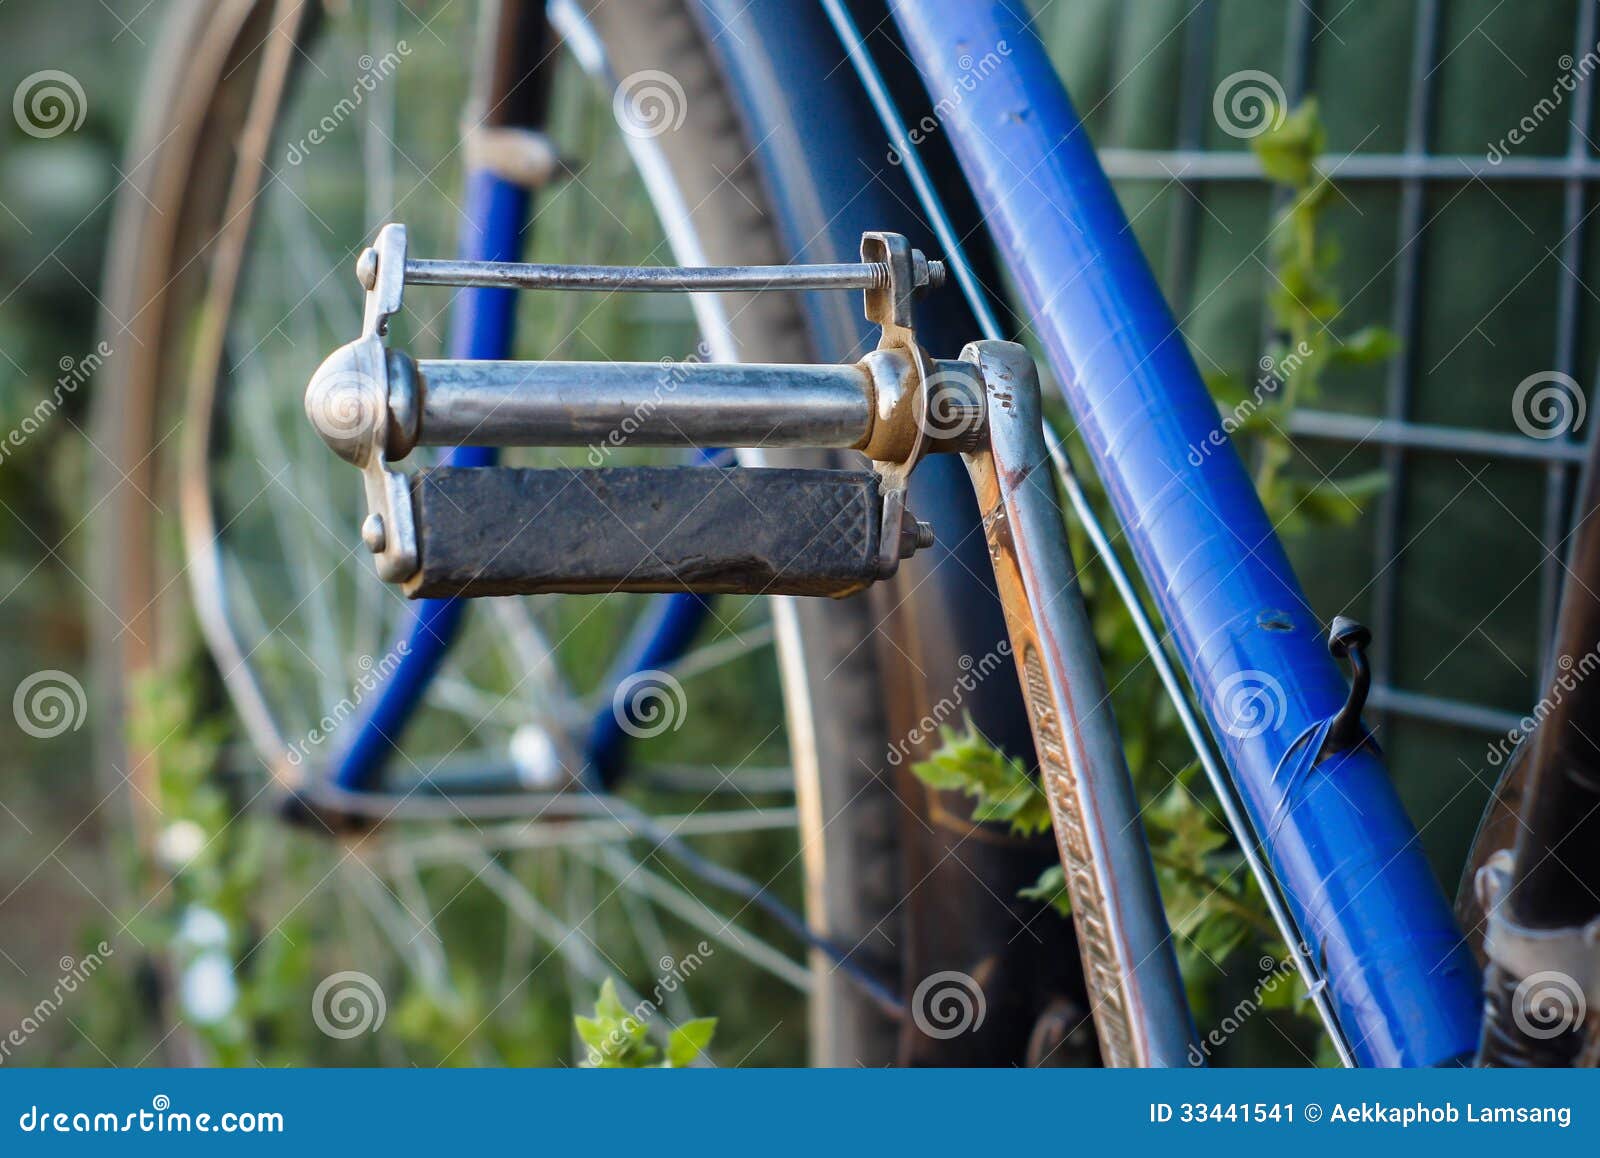 des affaires pour bicyclette